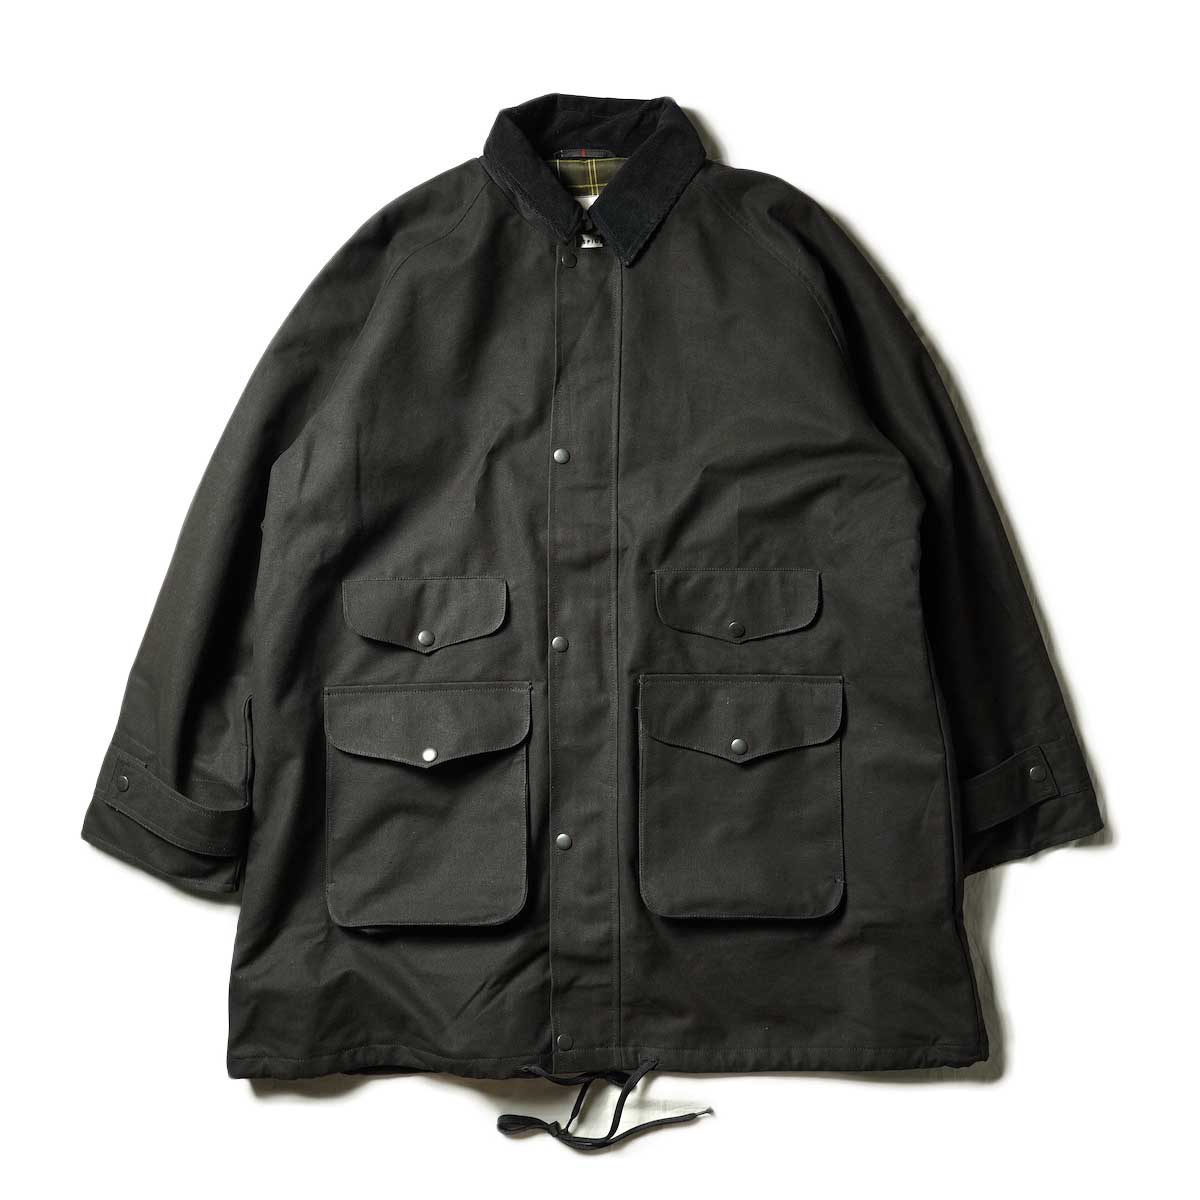 PORTRAITE / Classic Field Jacket Long - Canvas (Black)